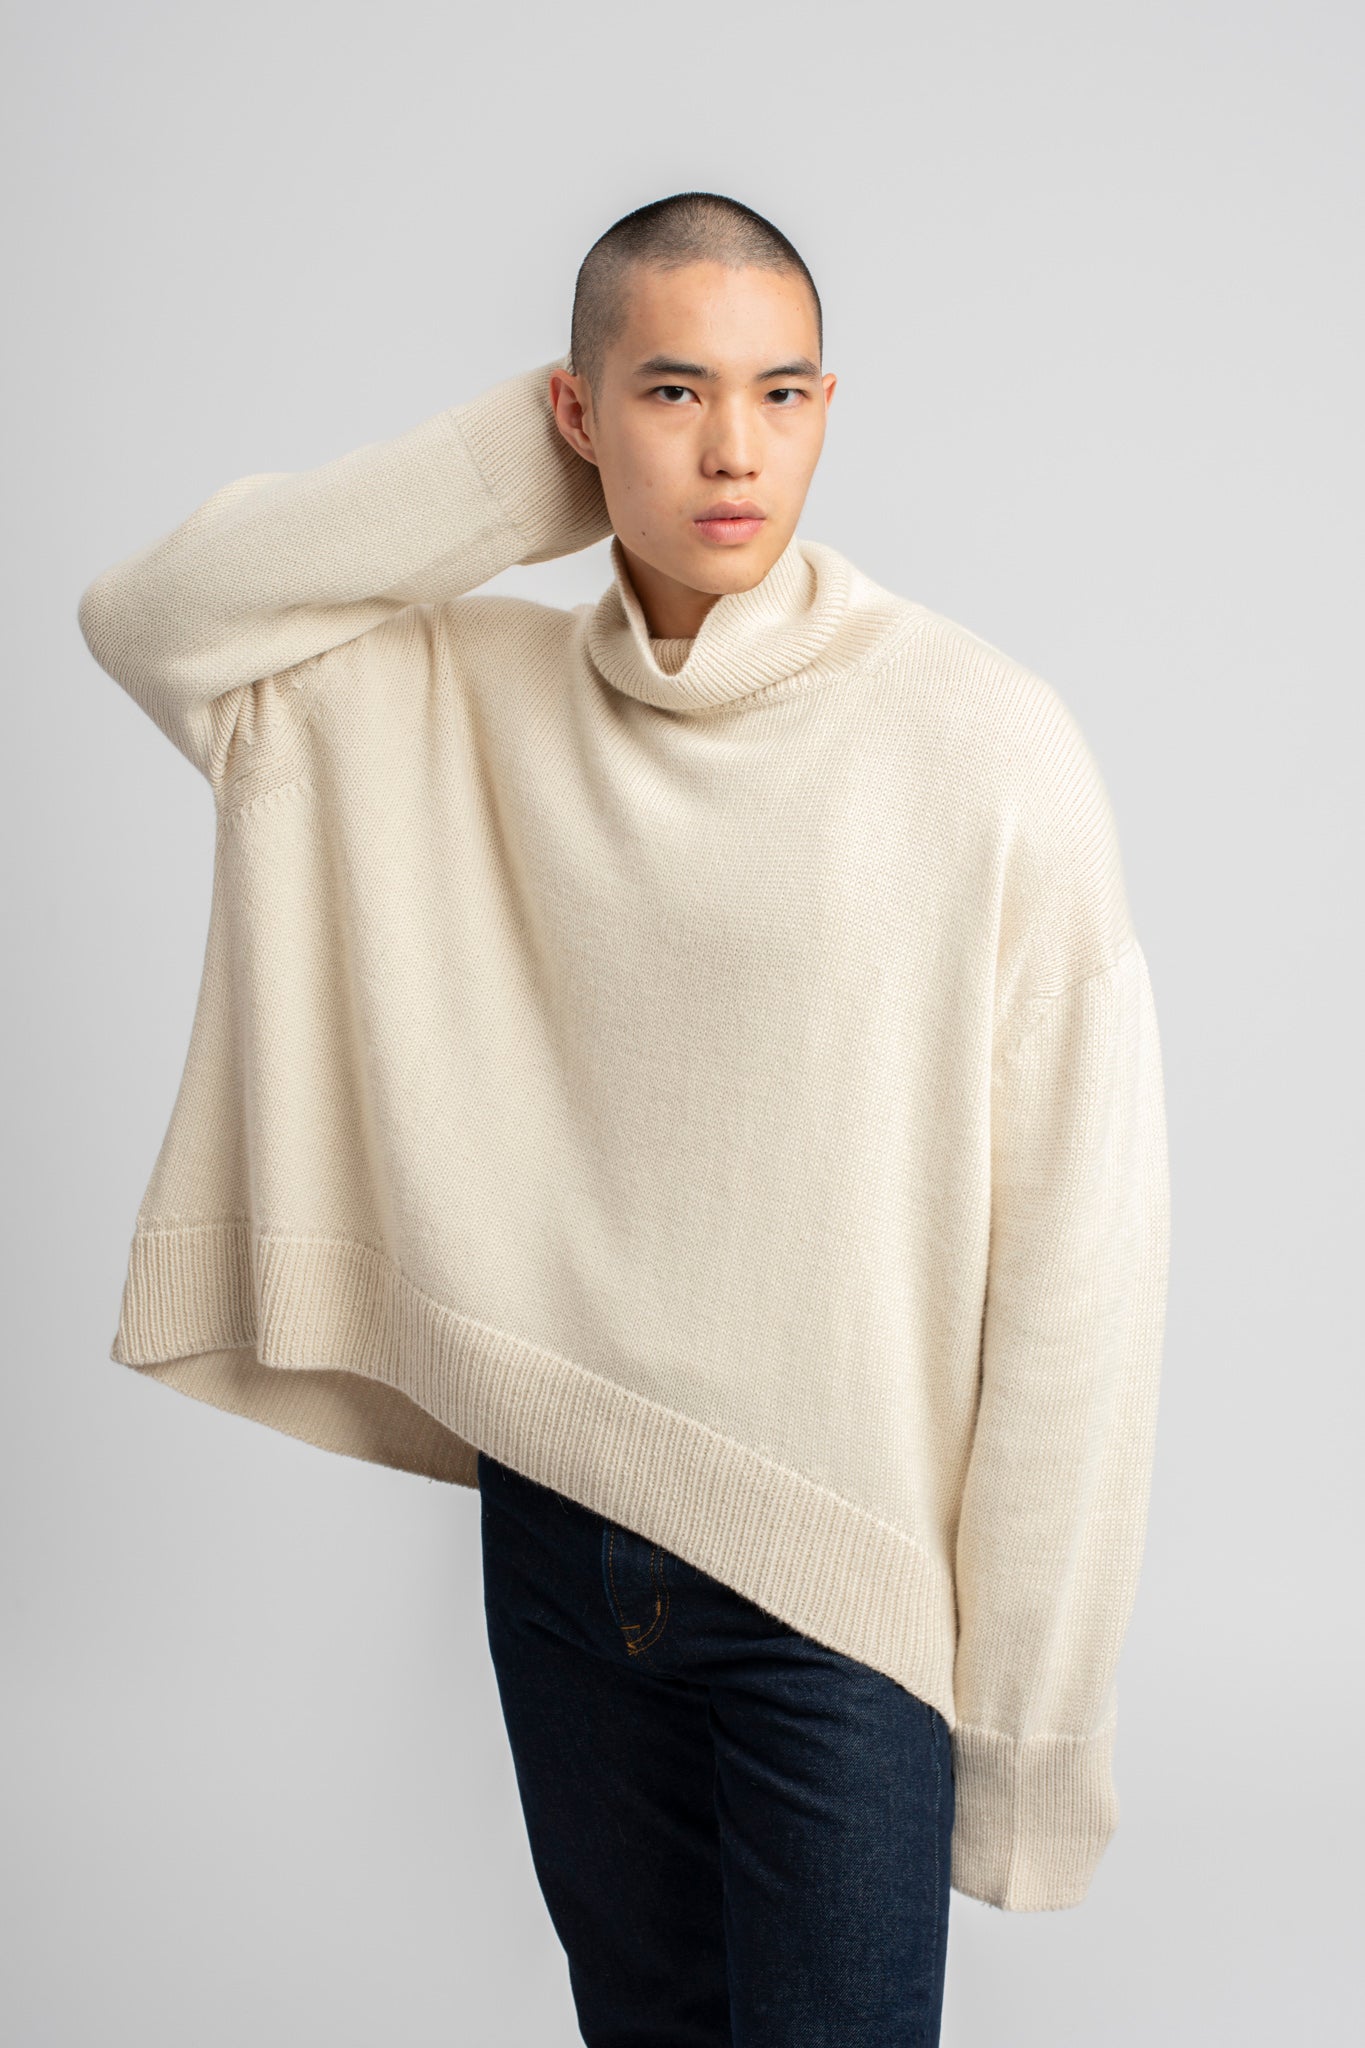 Model wearing turtleneck oversized sweater in white alpaca wool, front